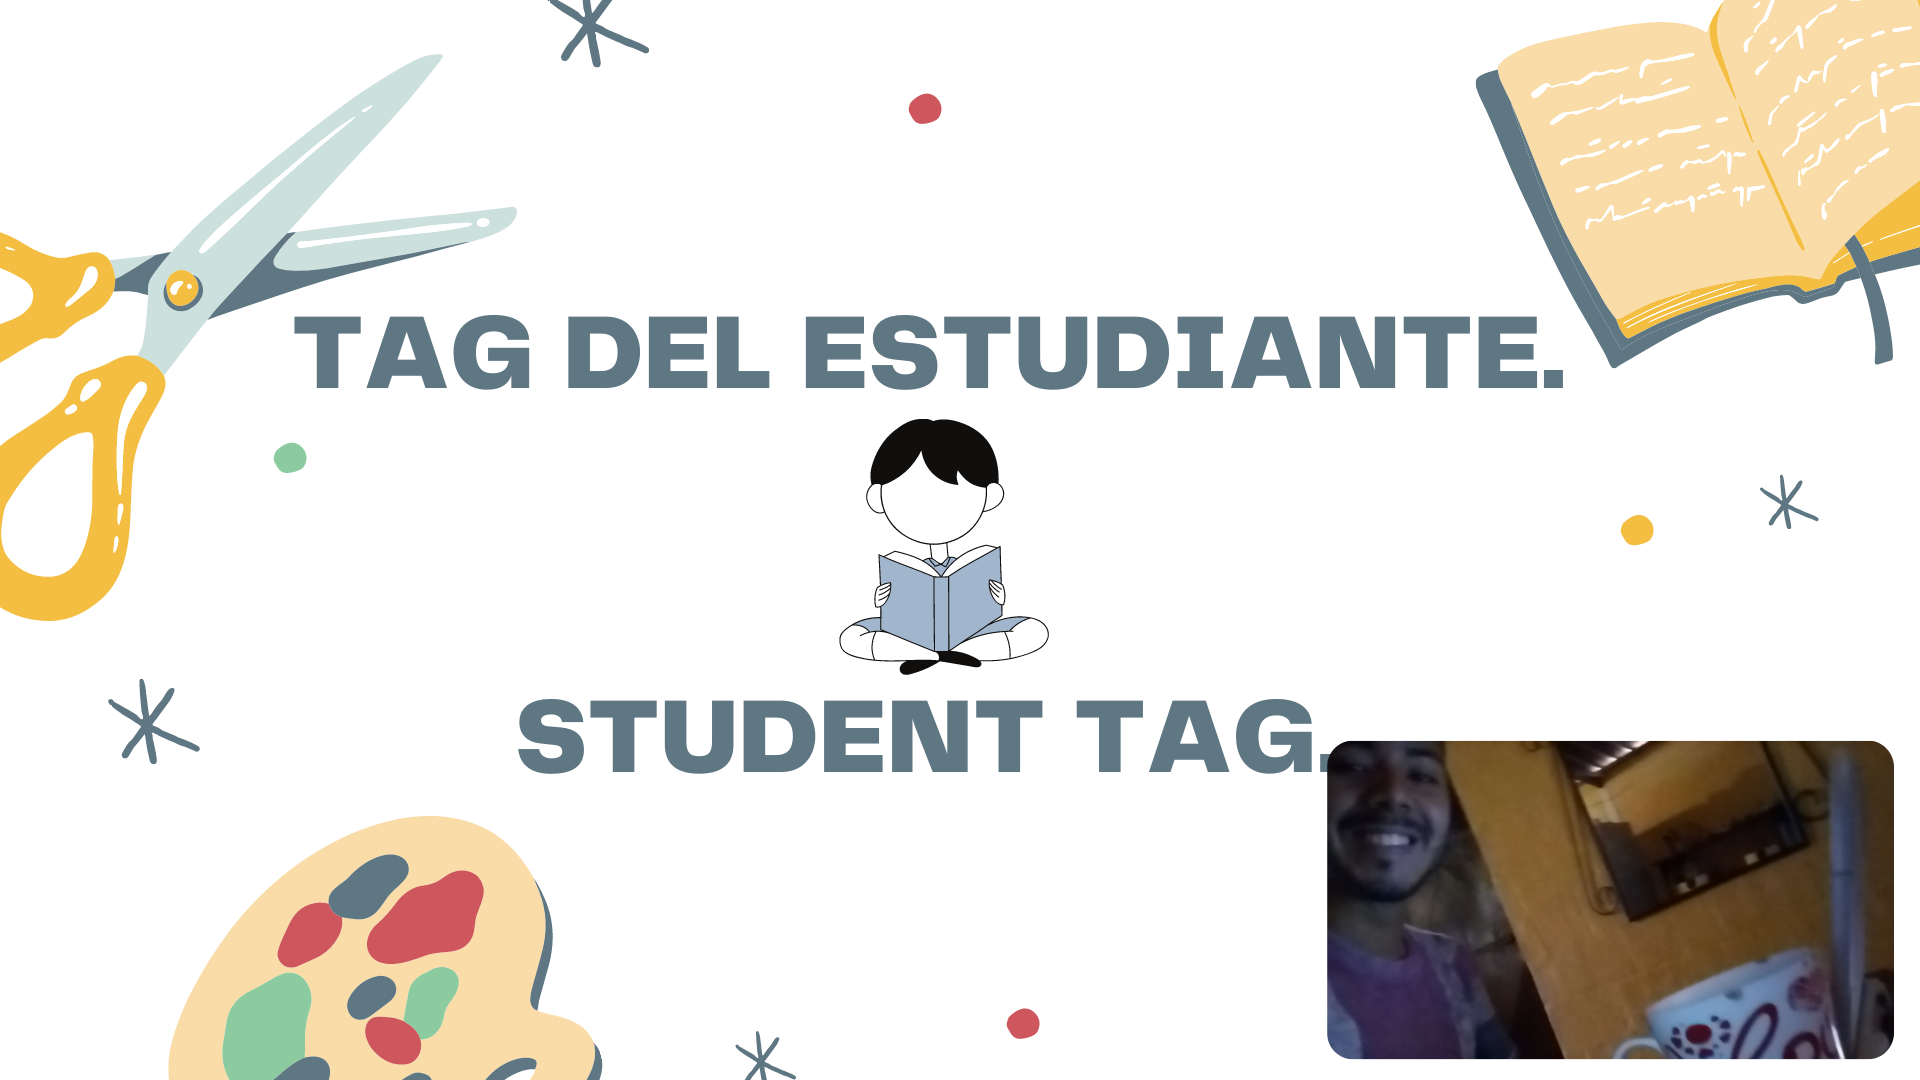 TAG DEL ESTUDIANTE. - STUDENT TAG.(1).png